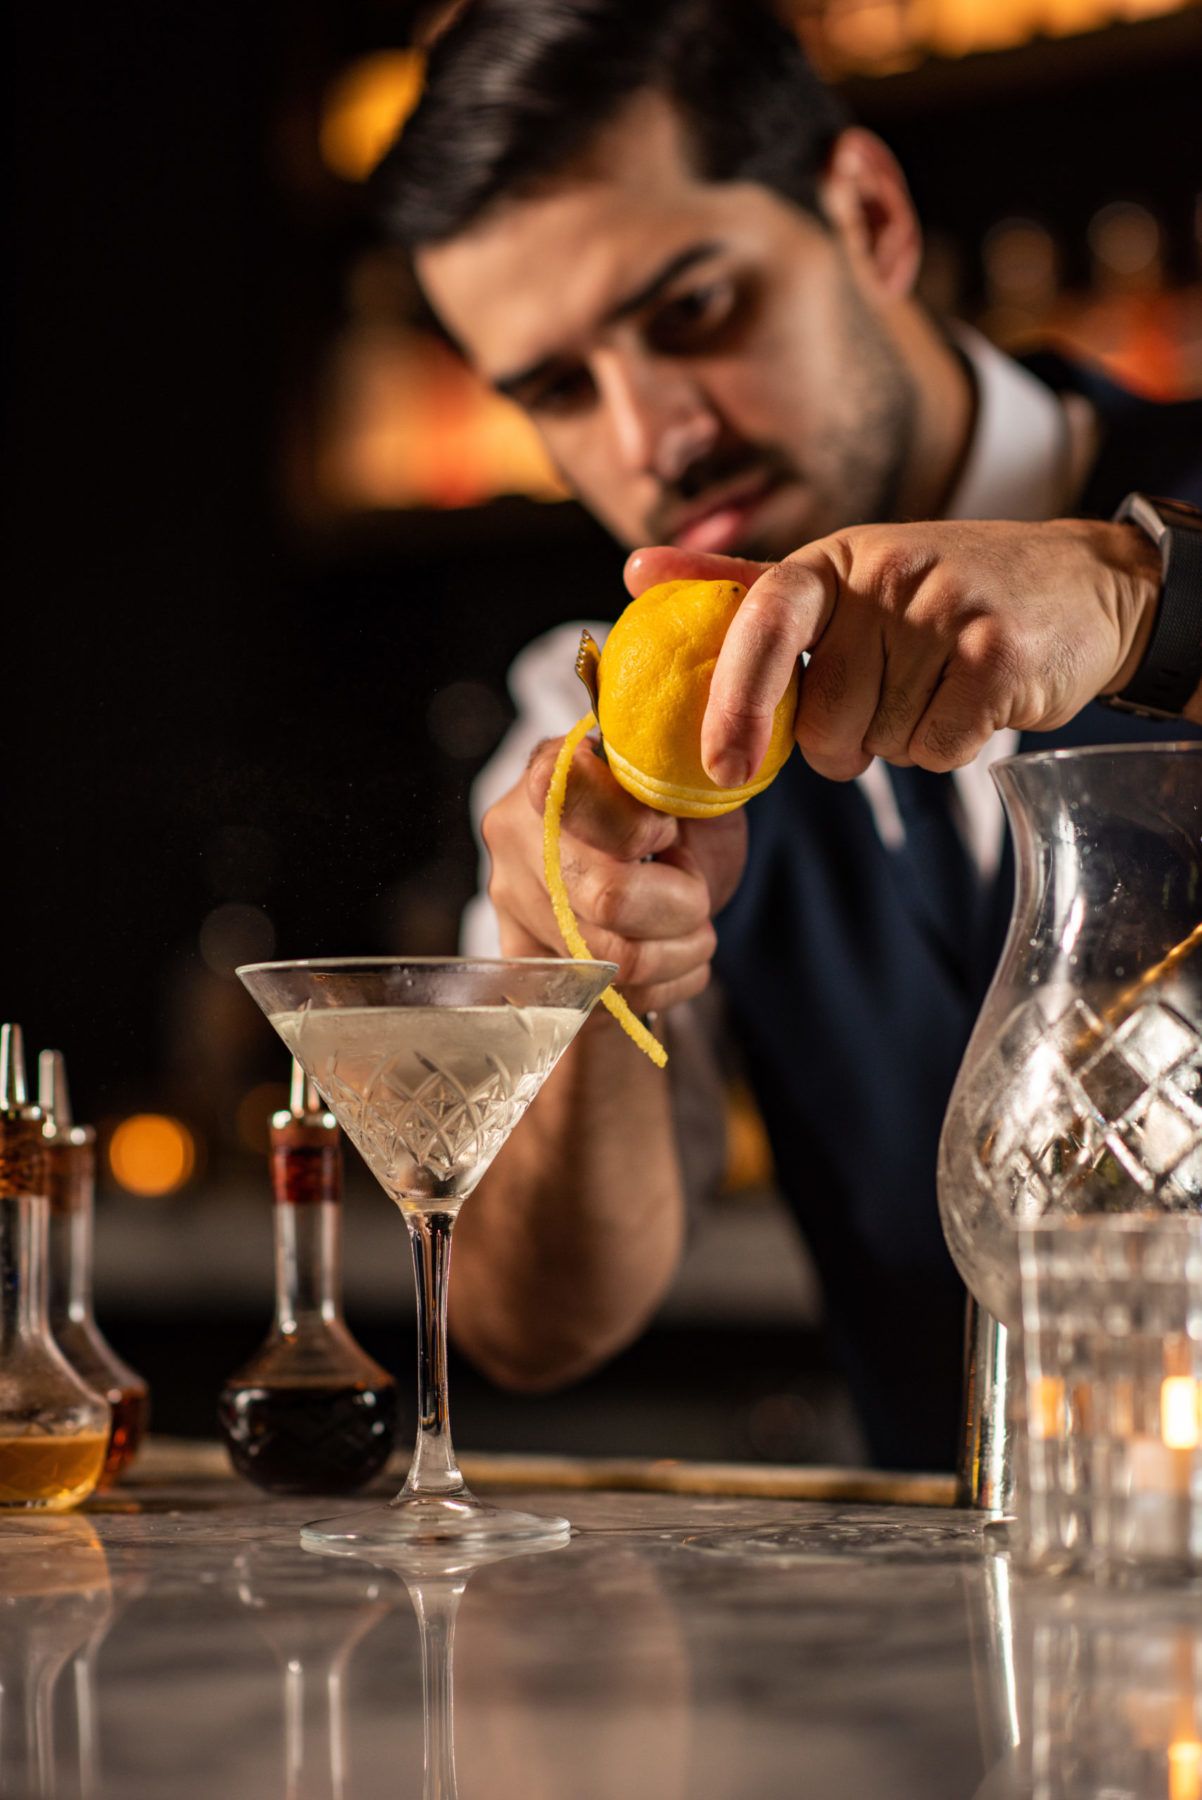 Bartender peeling lemon over a martini glass at bar